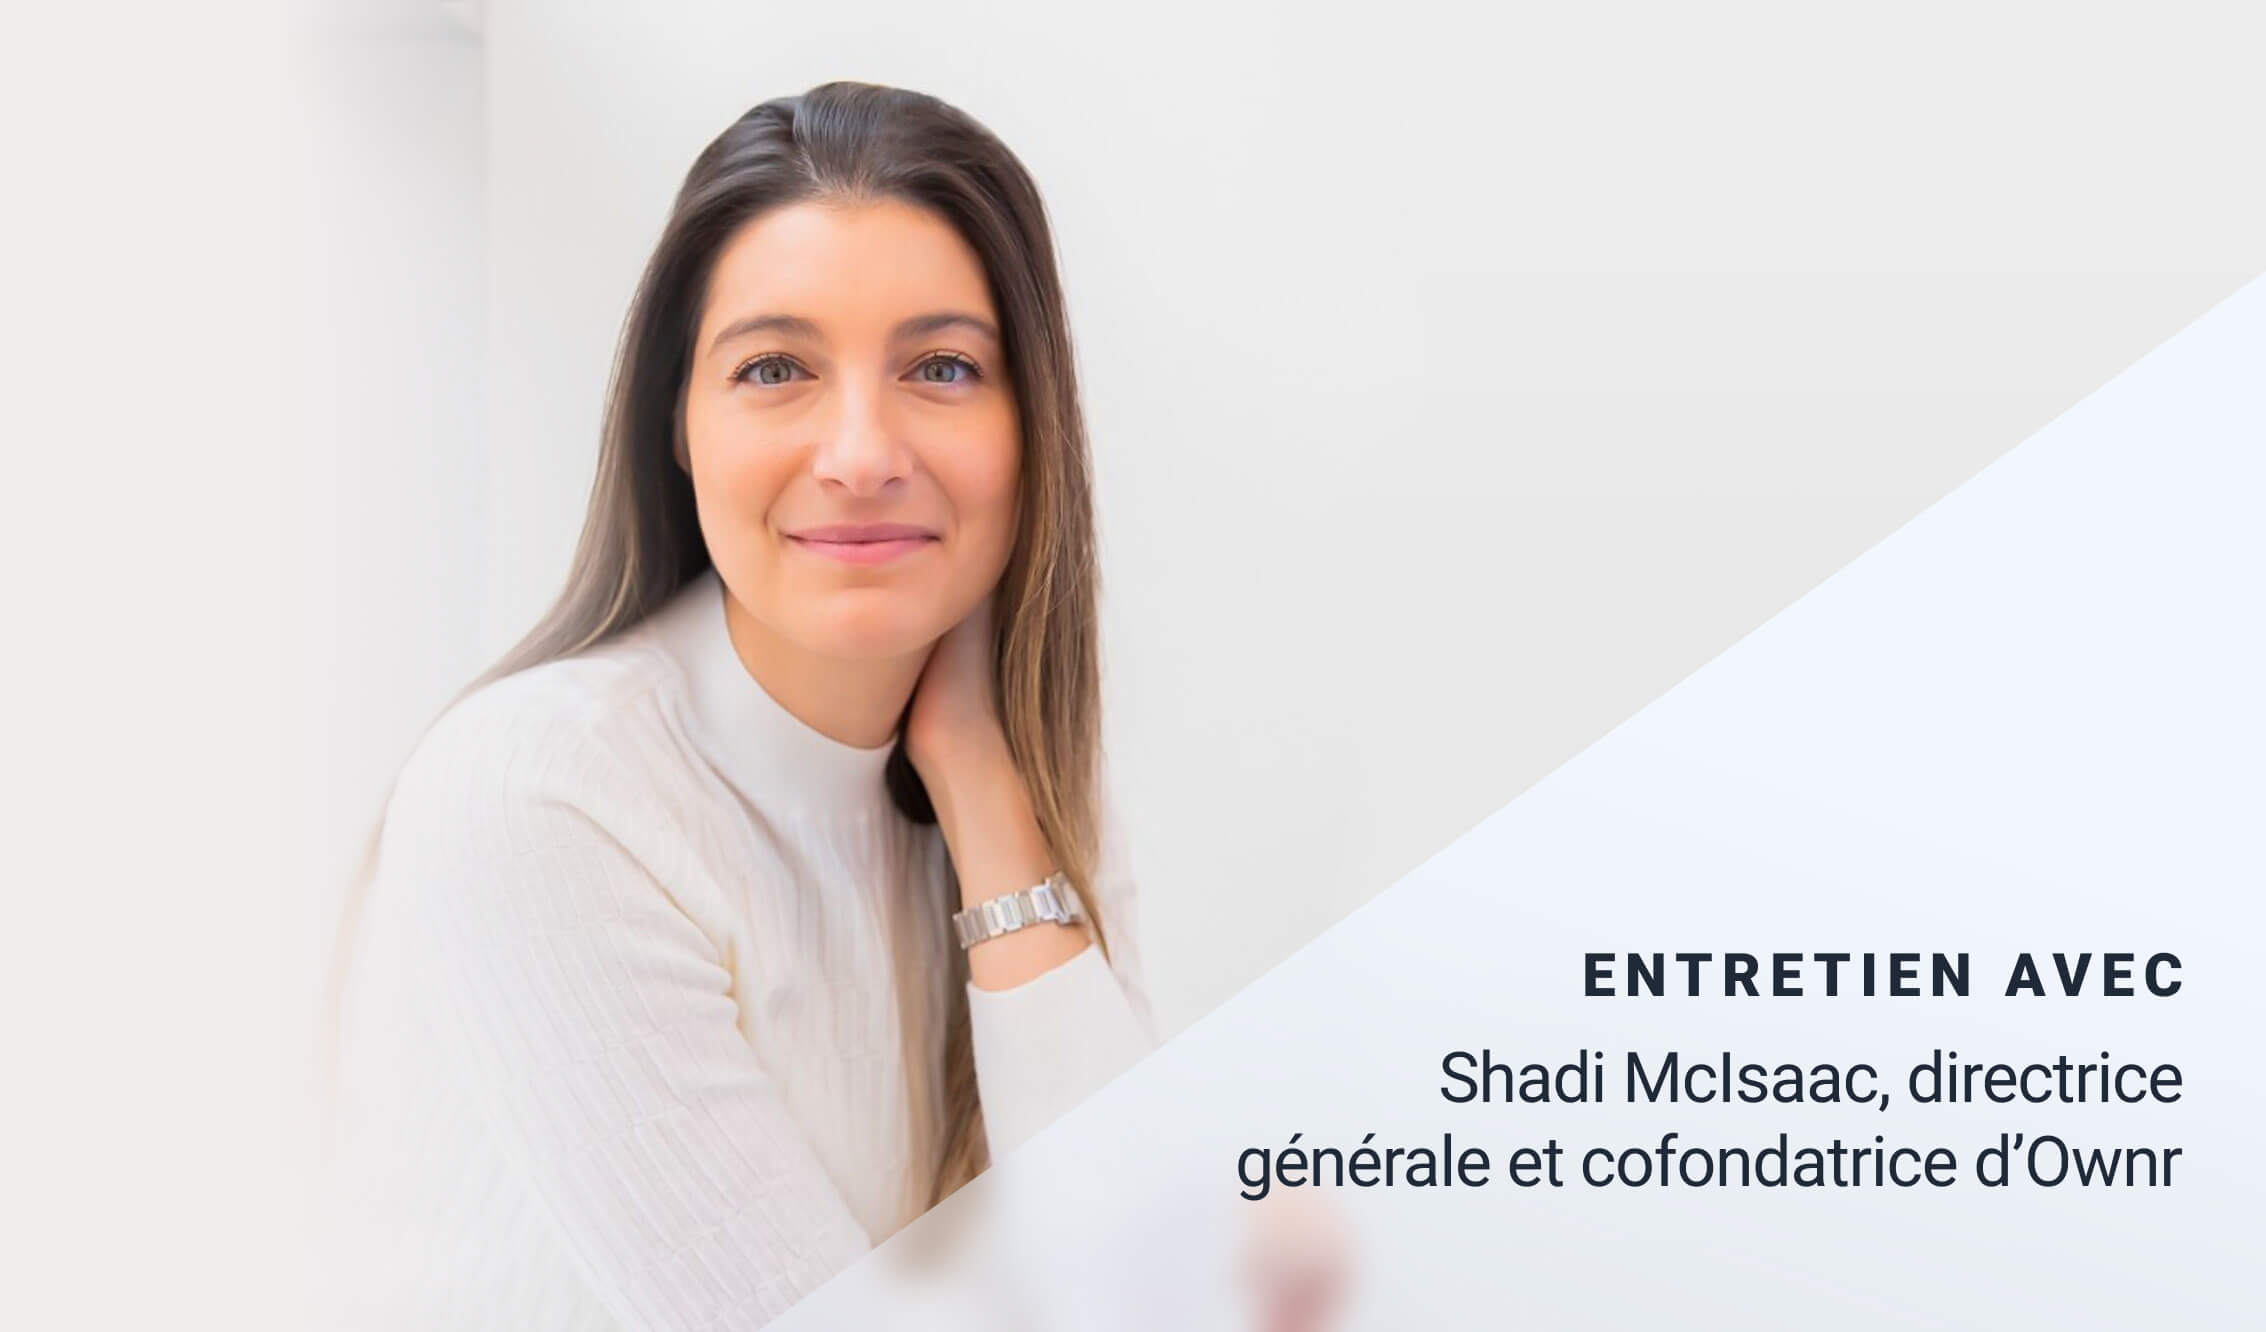 Entretien avec Shadi McIsaac, directrice générale et cofondatrice d’Ownr